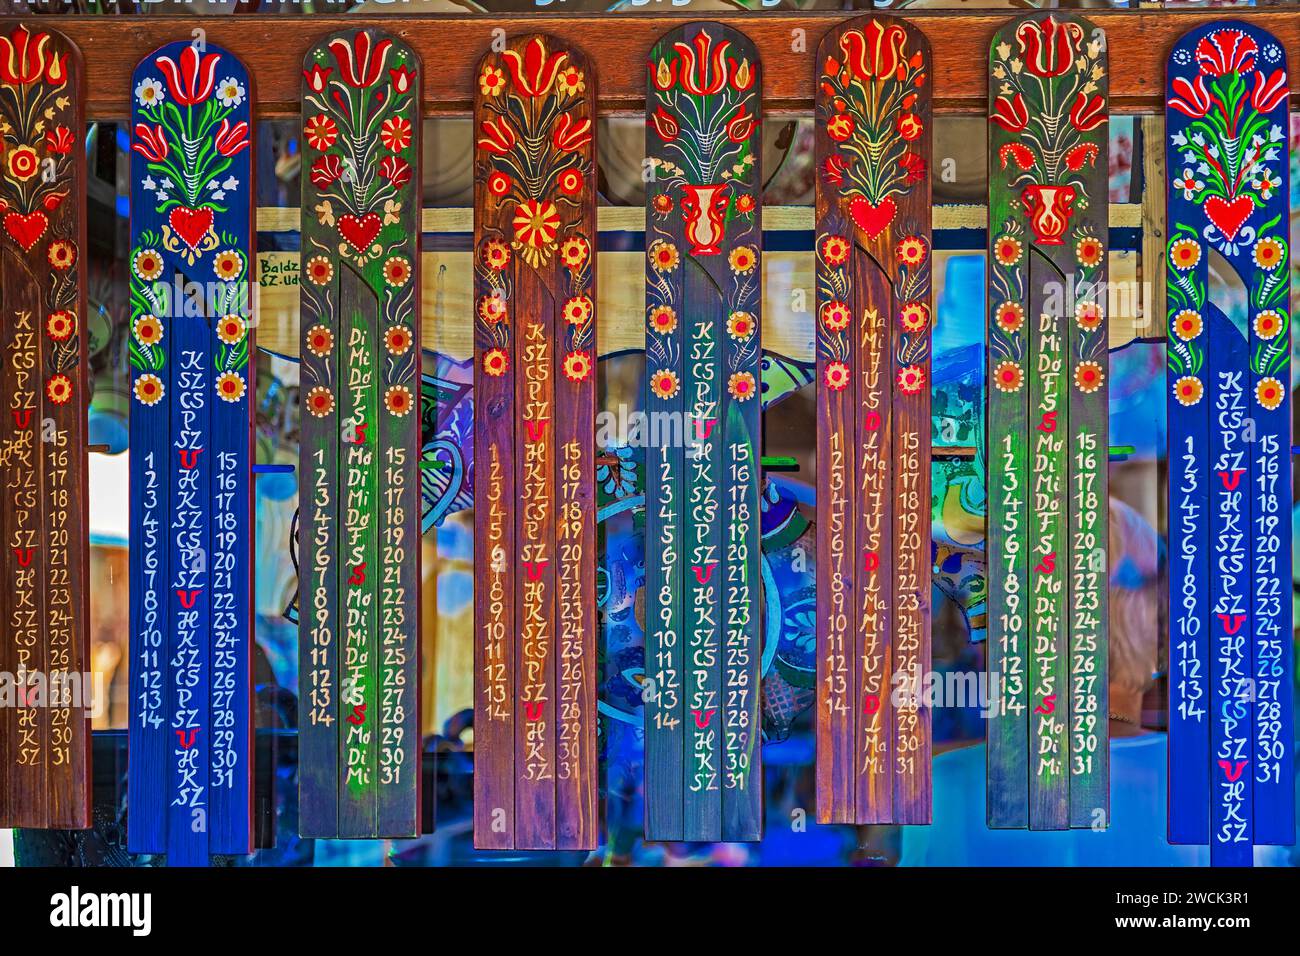 CORUND, TRANSILVANIA, ROMANIA - 11 LUGLIO 2020: Calendari decorativi in legno dipinti con motivi tradizionali ungheresi, esposti in vendita come souvenir. Foto Stock